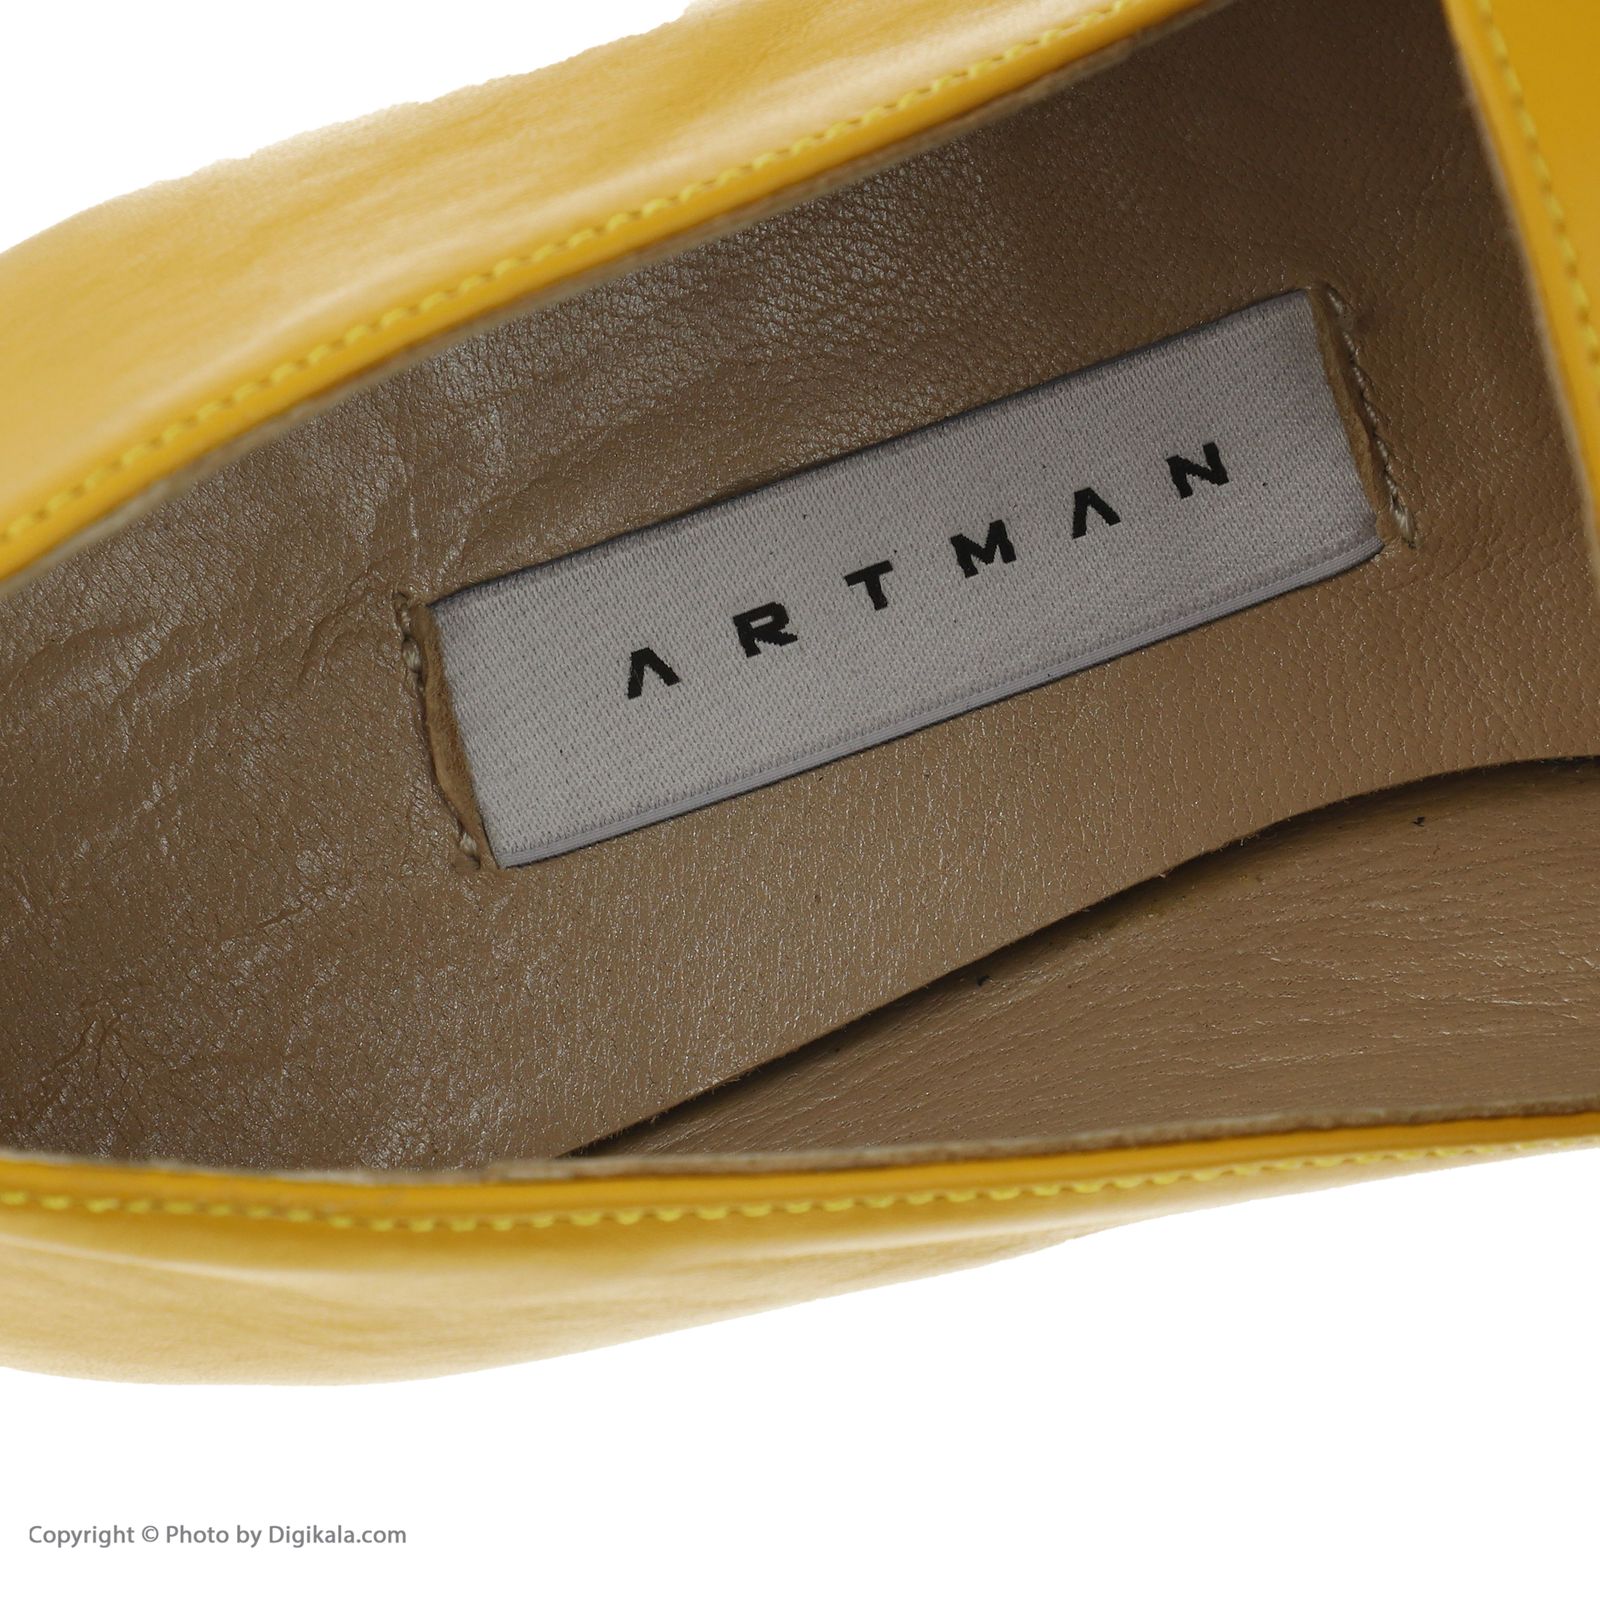 کفش زنانه آرتمن مدل 44589-saffira 3-orange yellow -  - 5